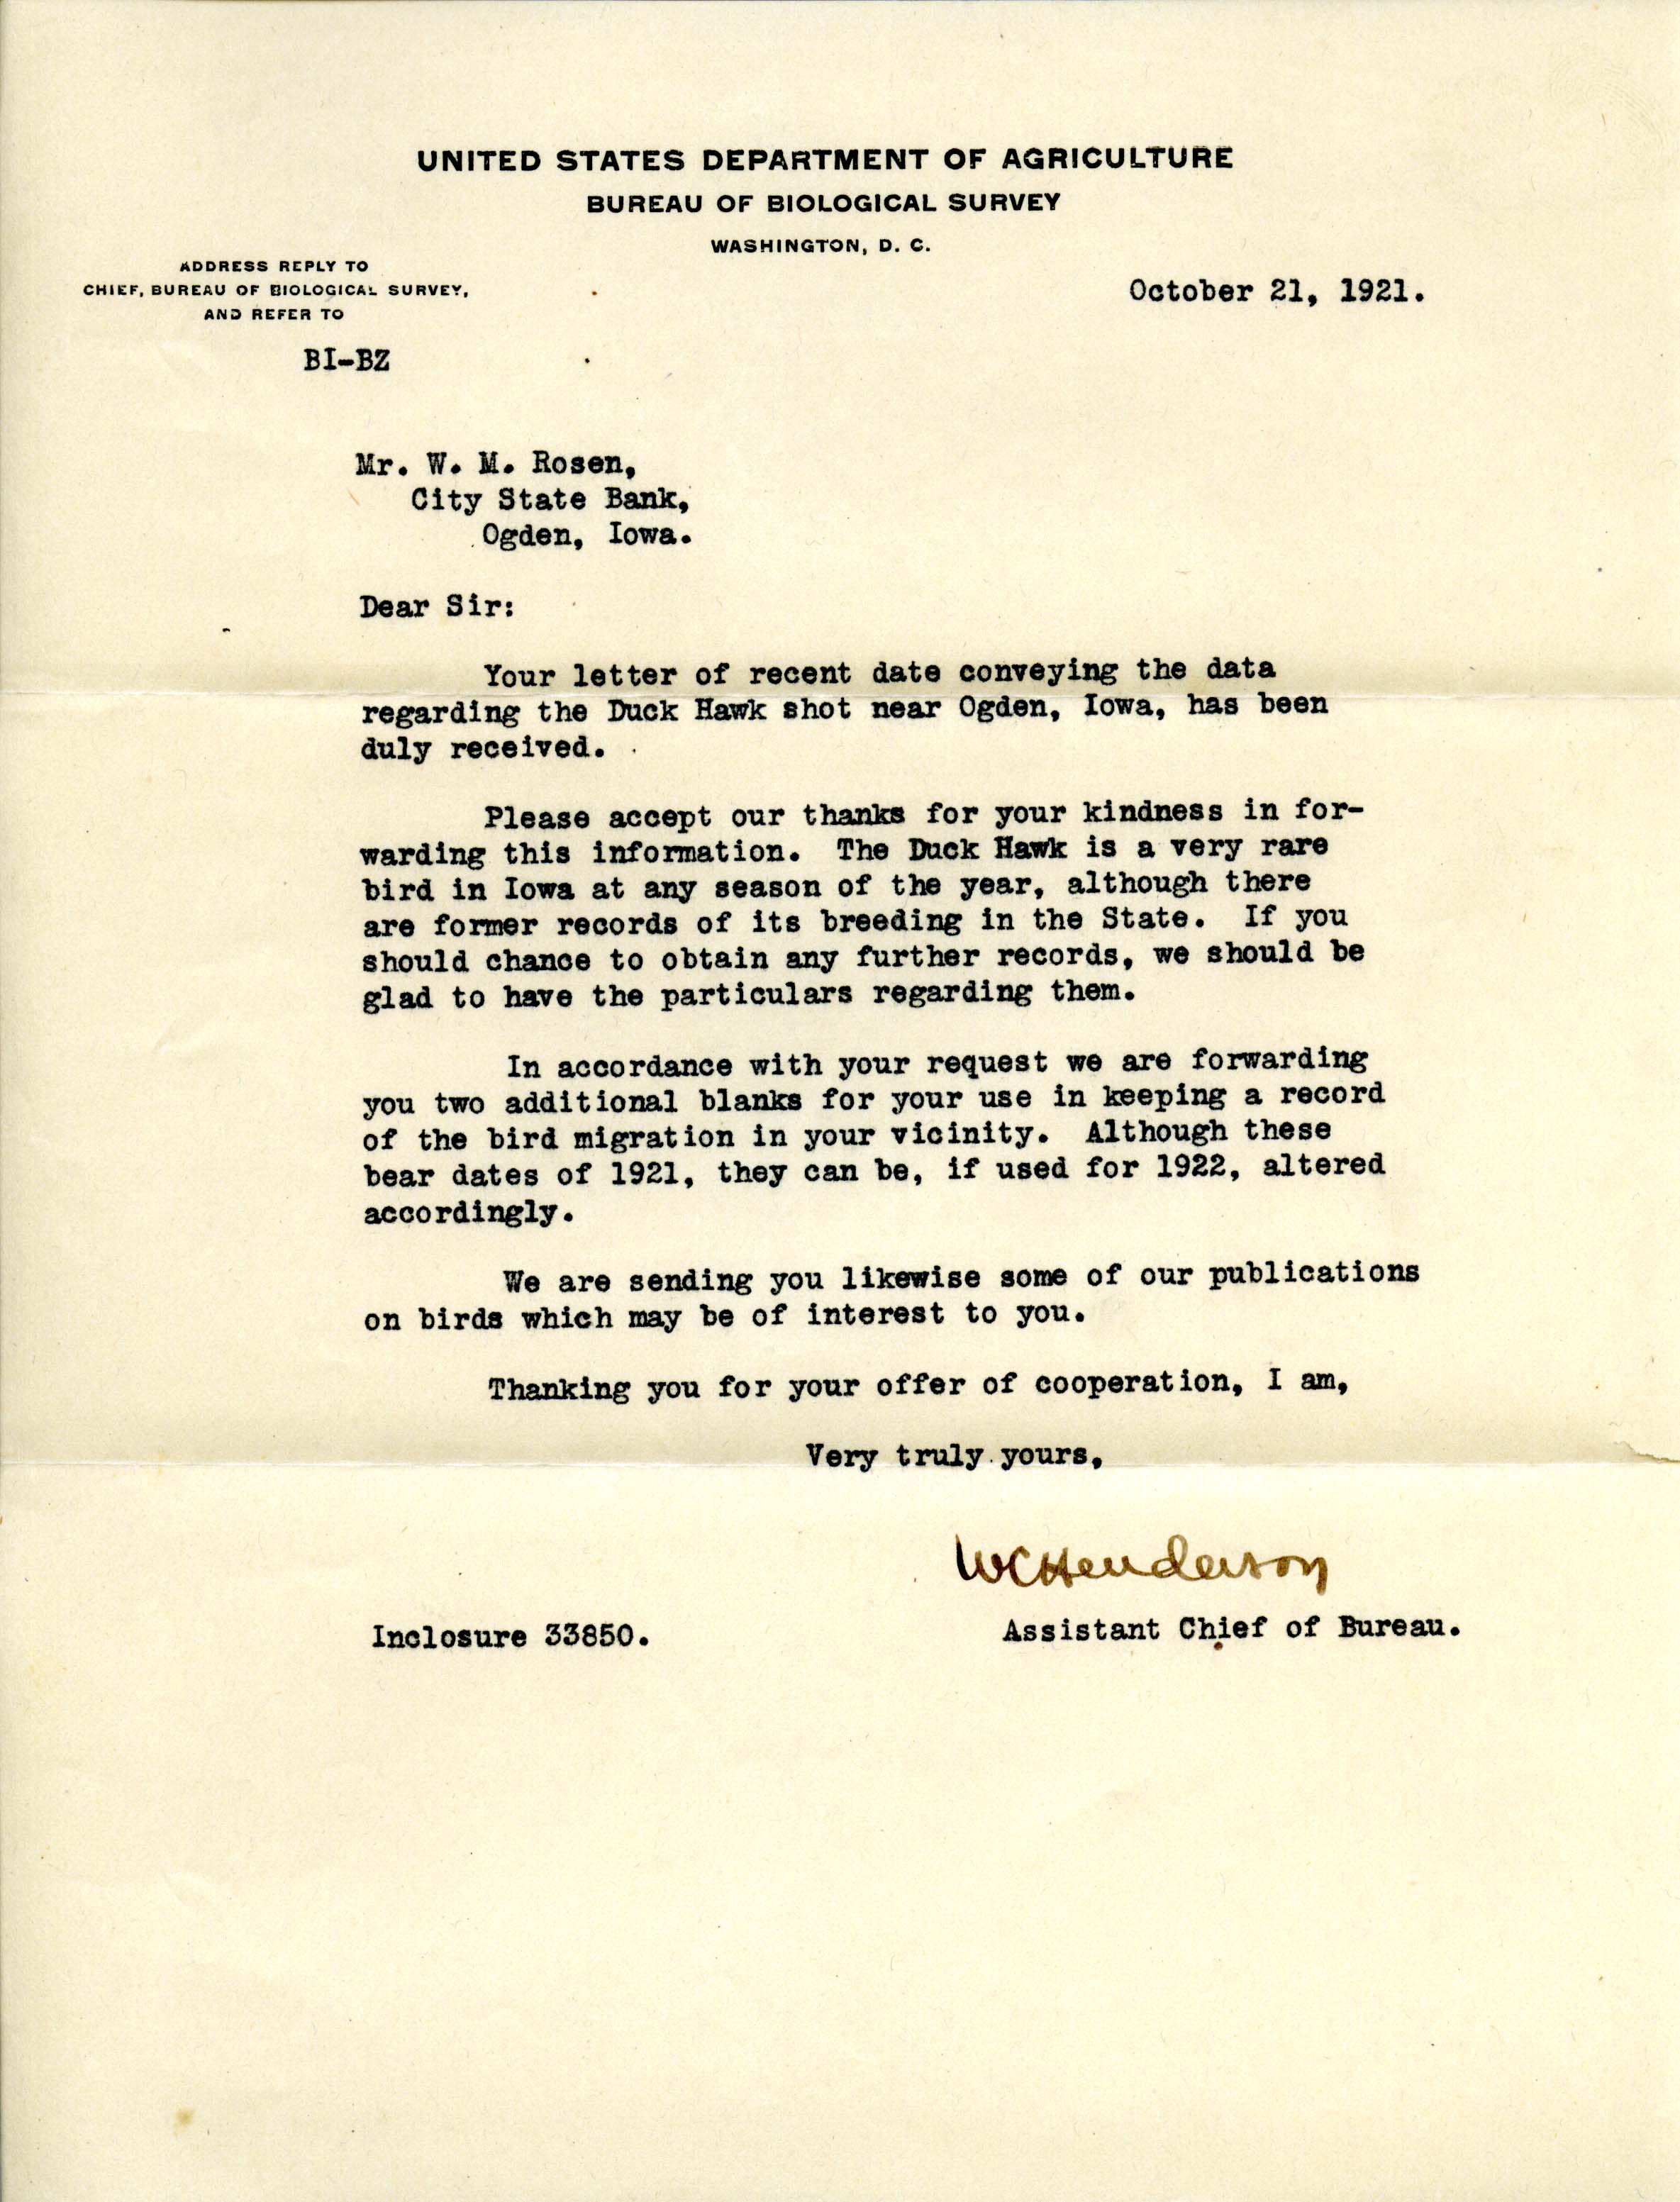 Walter C. Henderson letter to Walter Rosene regarding a Duck Hawk shot near Ogden, October 21, 1921